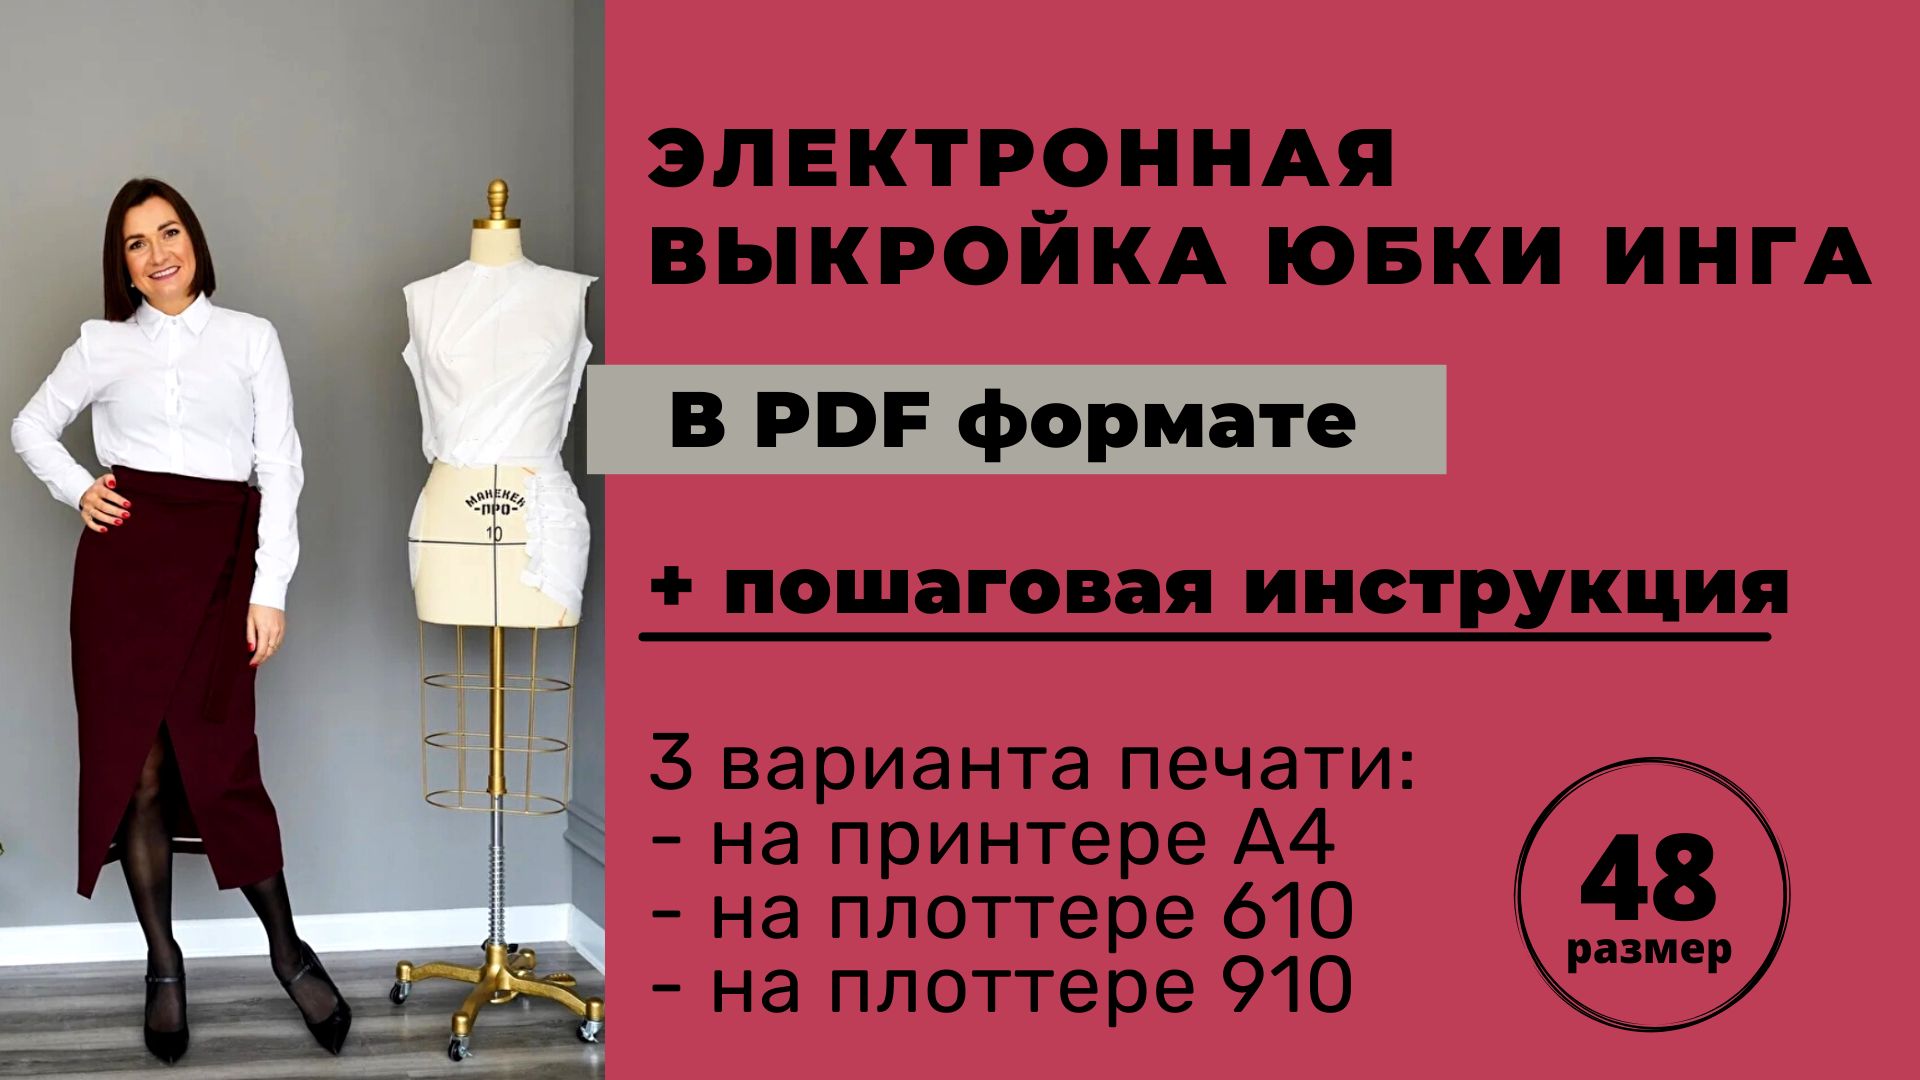 Электронная выкройка юбки Инга размер 48 в формате pdf для печати А4 / плоттер 610 / плоттер 910